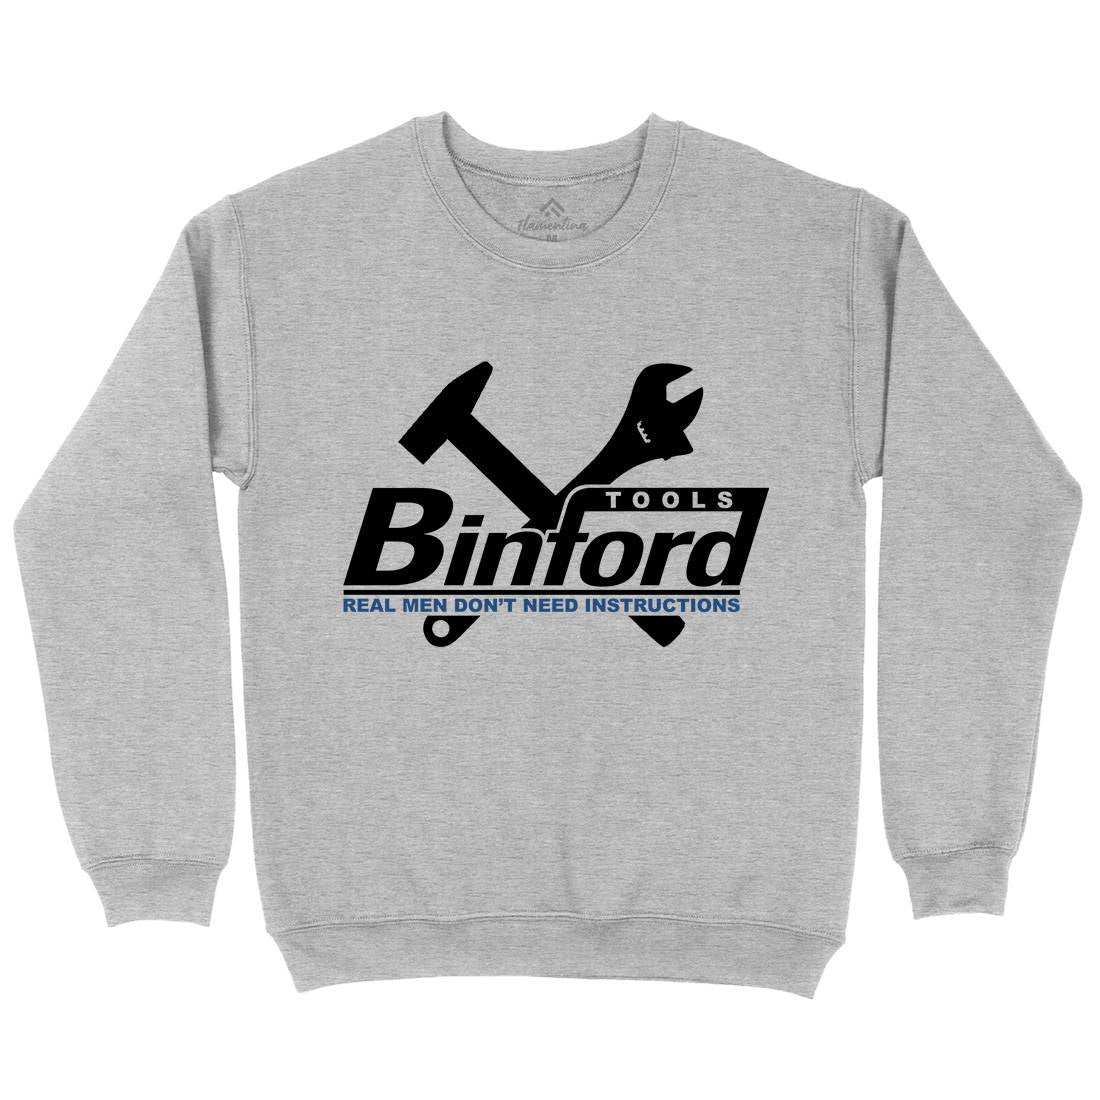 Binford Tools Mens Crew Neck Sweatshirt Work D162